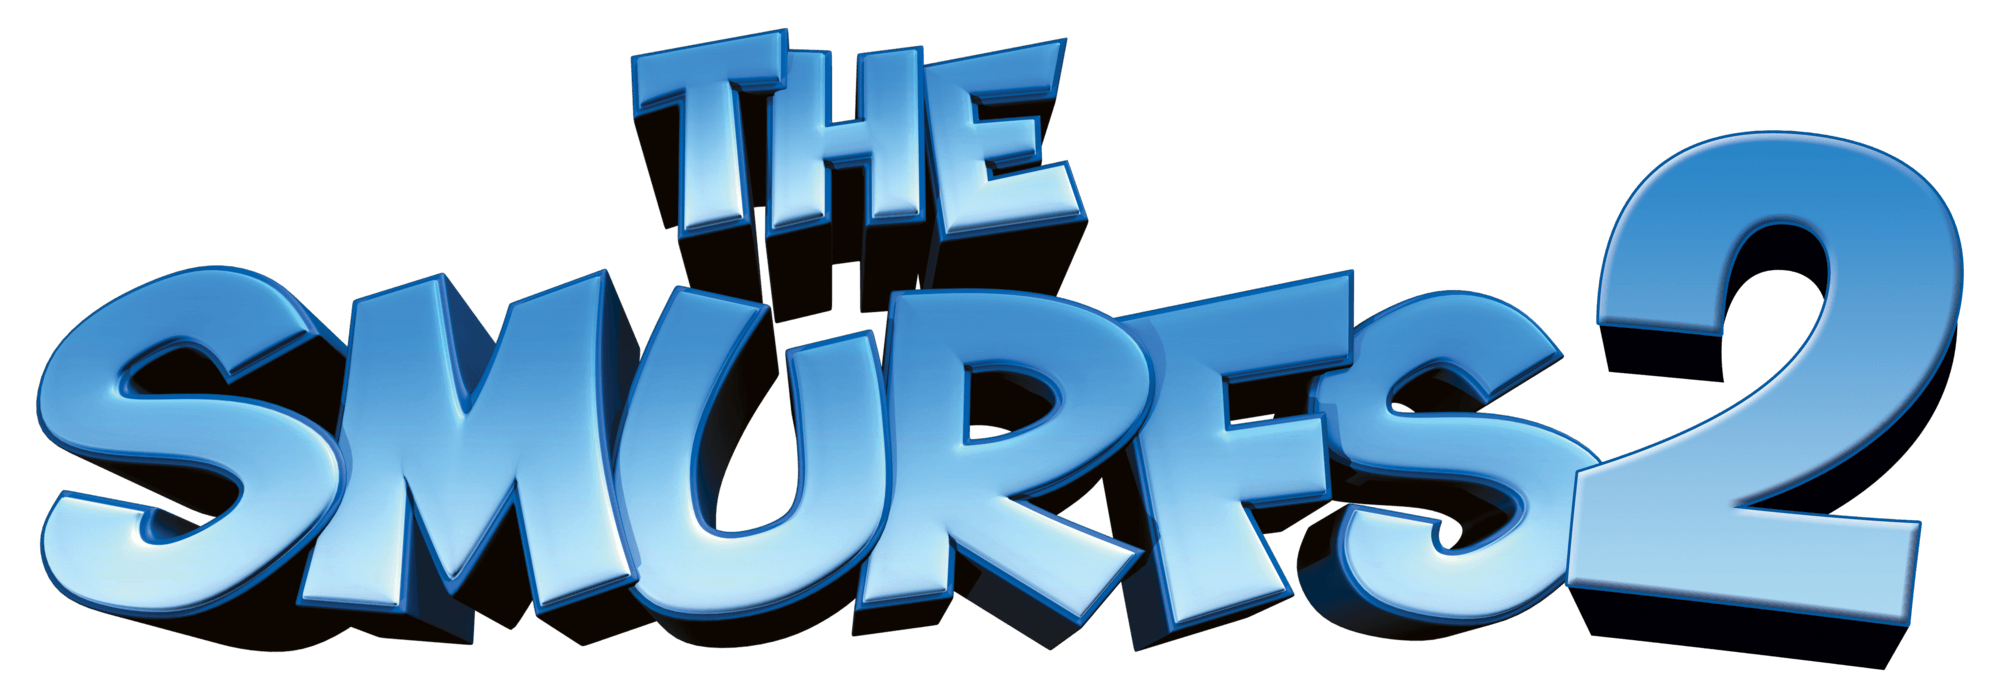 Smurfs Logo - The Smurfs 2